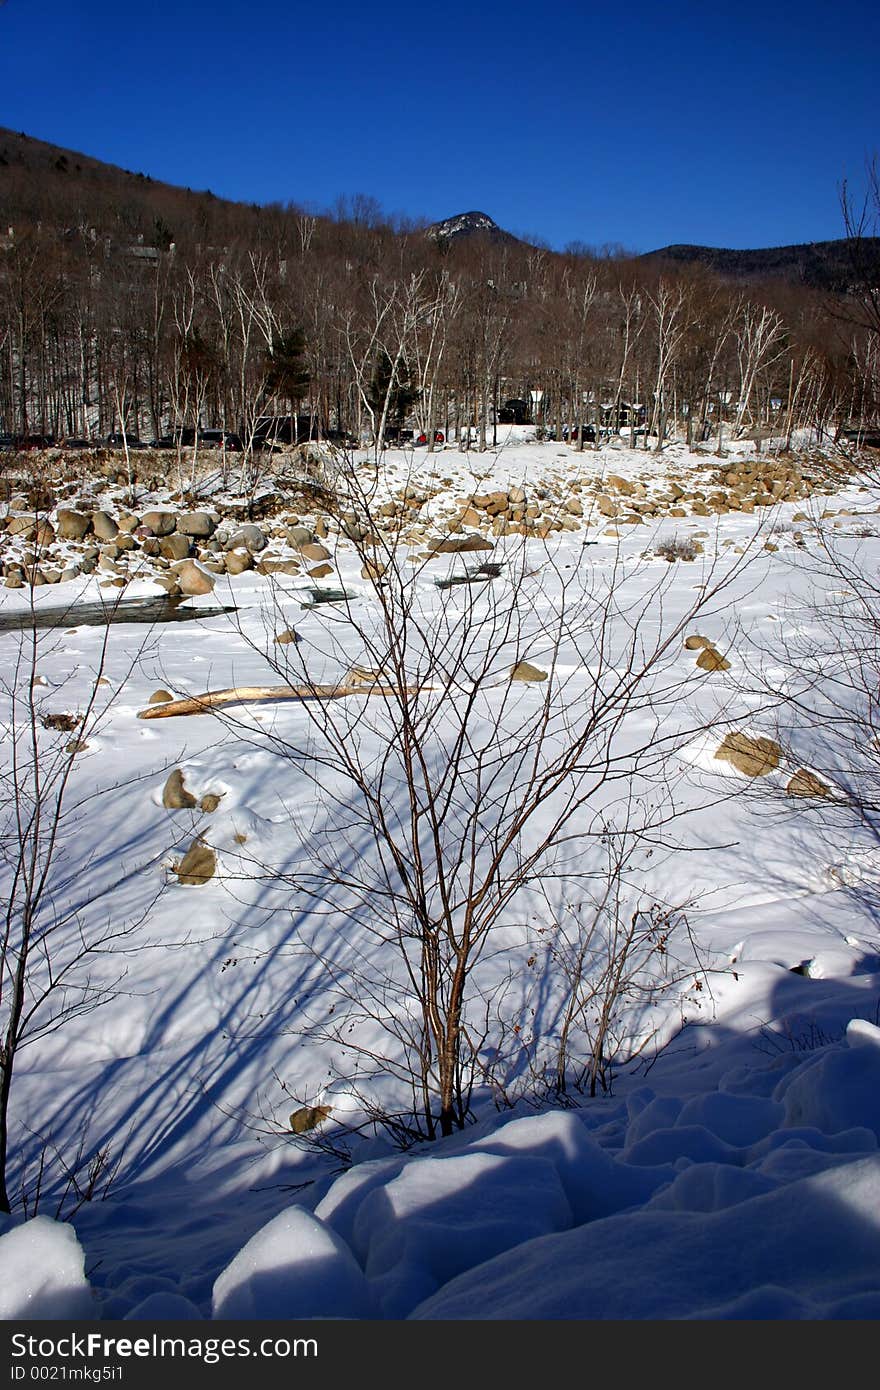 Winter in New England, USA. Winter in New England, USA